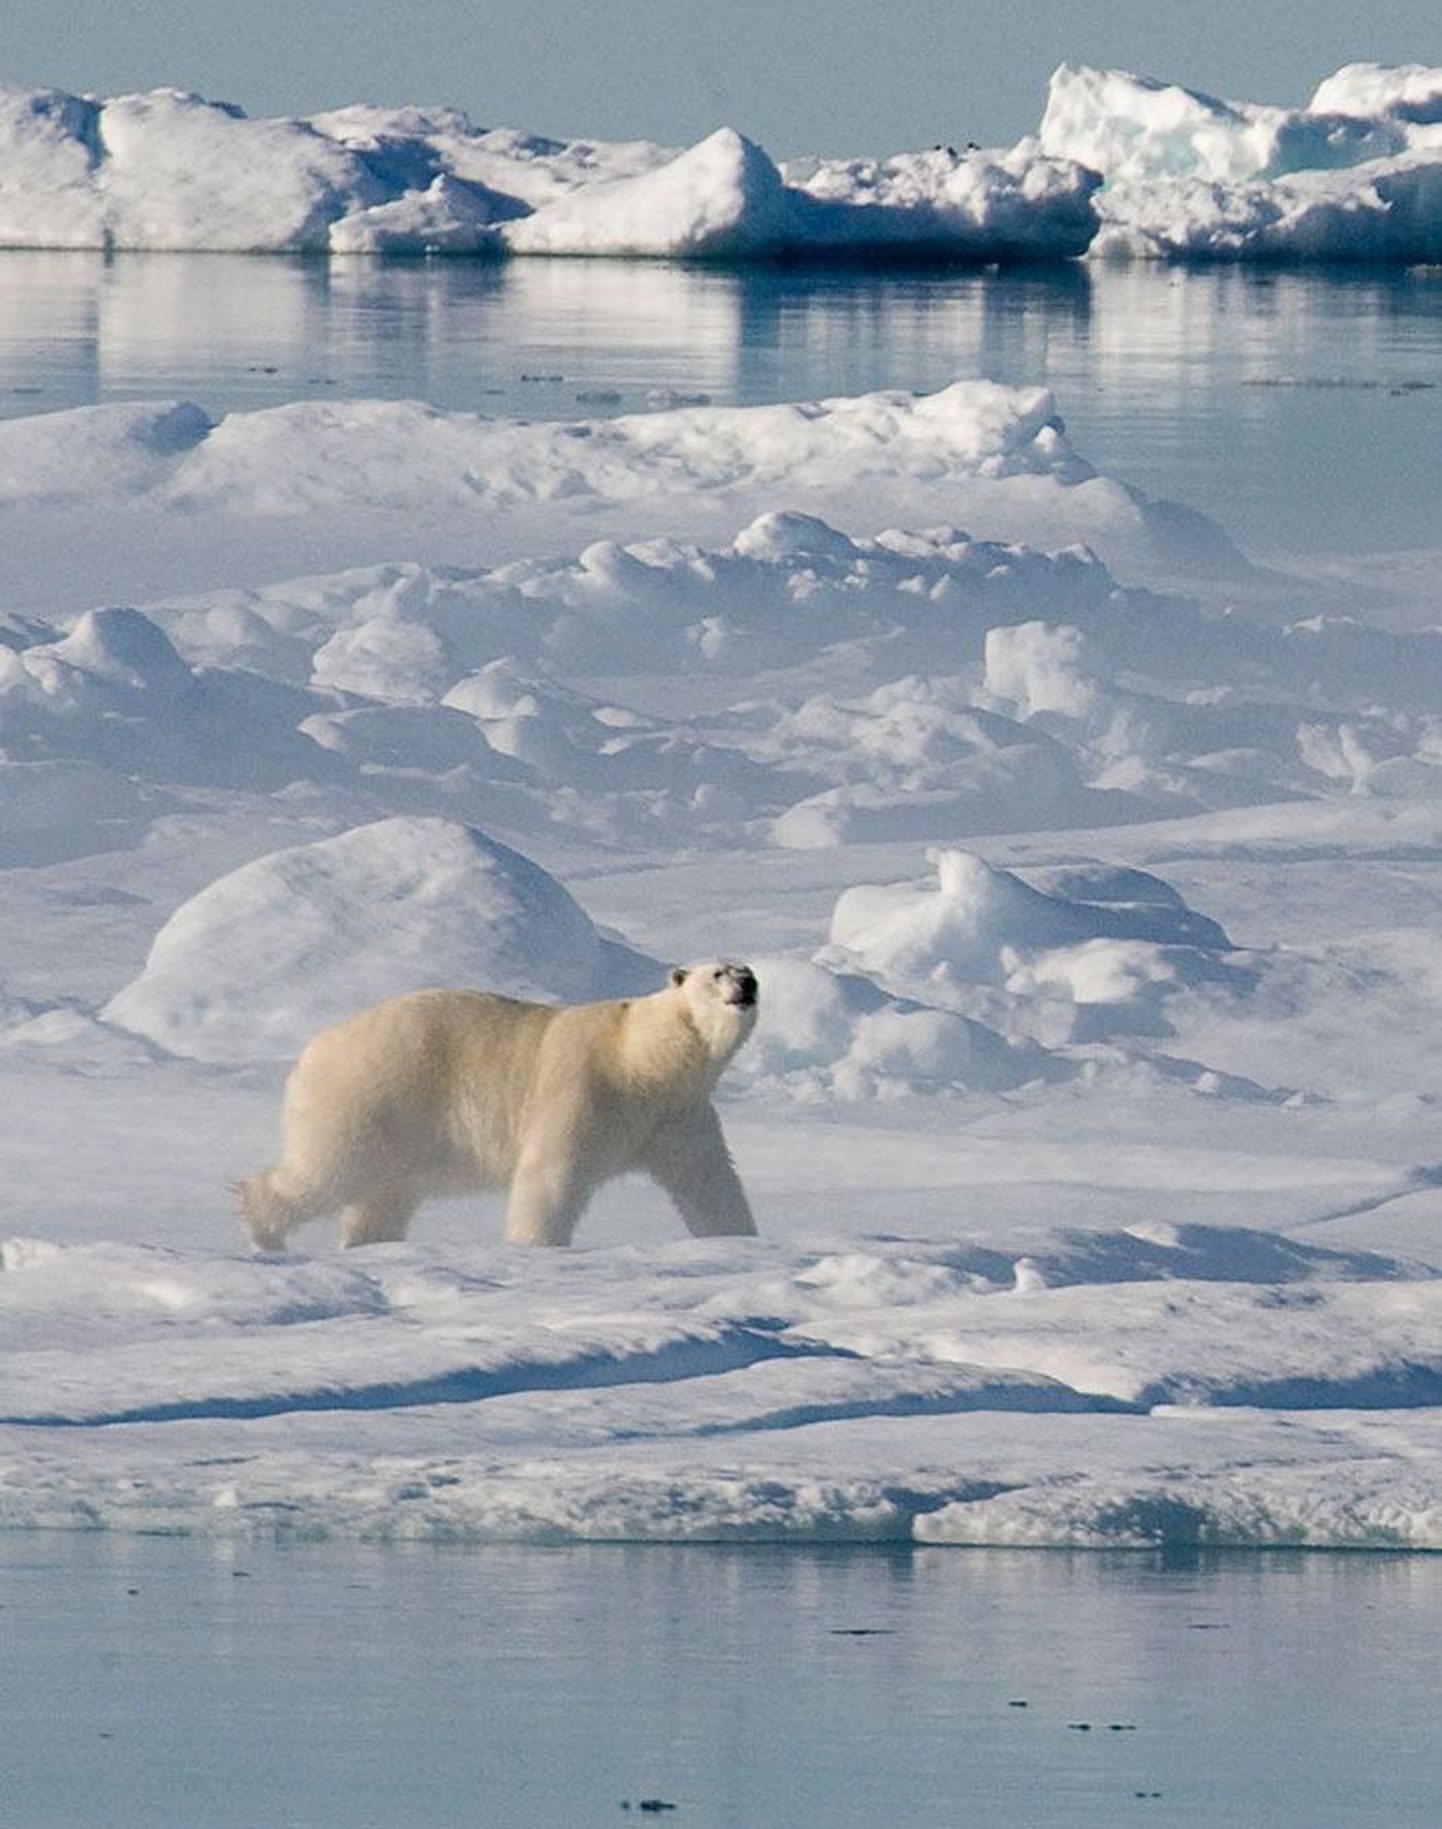 Antarktika jääkilbi mõõtmed on kogu usaldusväärse mõõtmisajaloo väikseimad ning see seab ohtu ka jääkarud, kes peavad ellujäämiseks elupaika vahetama.